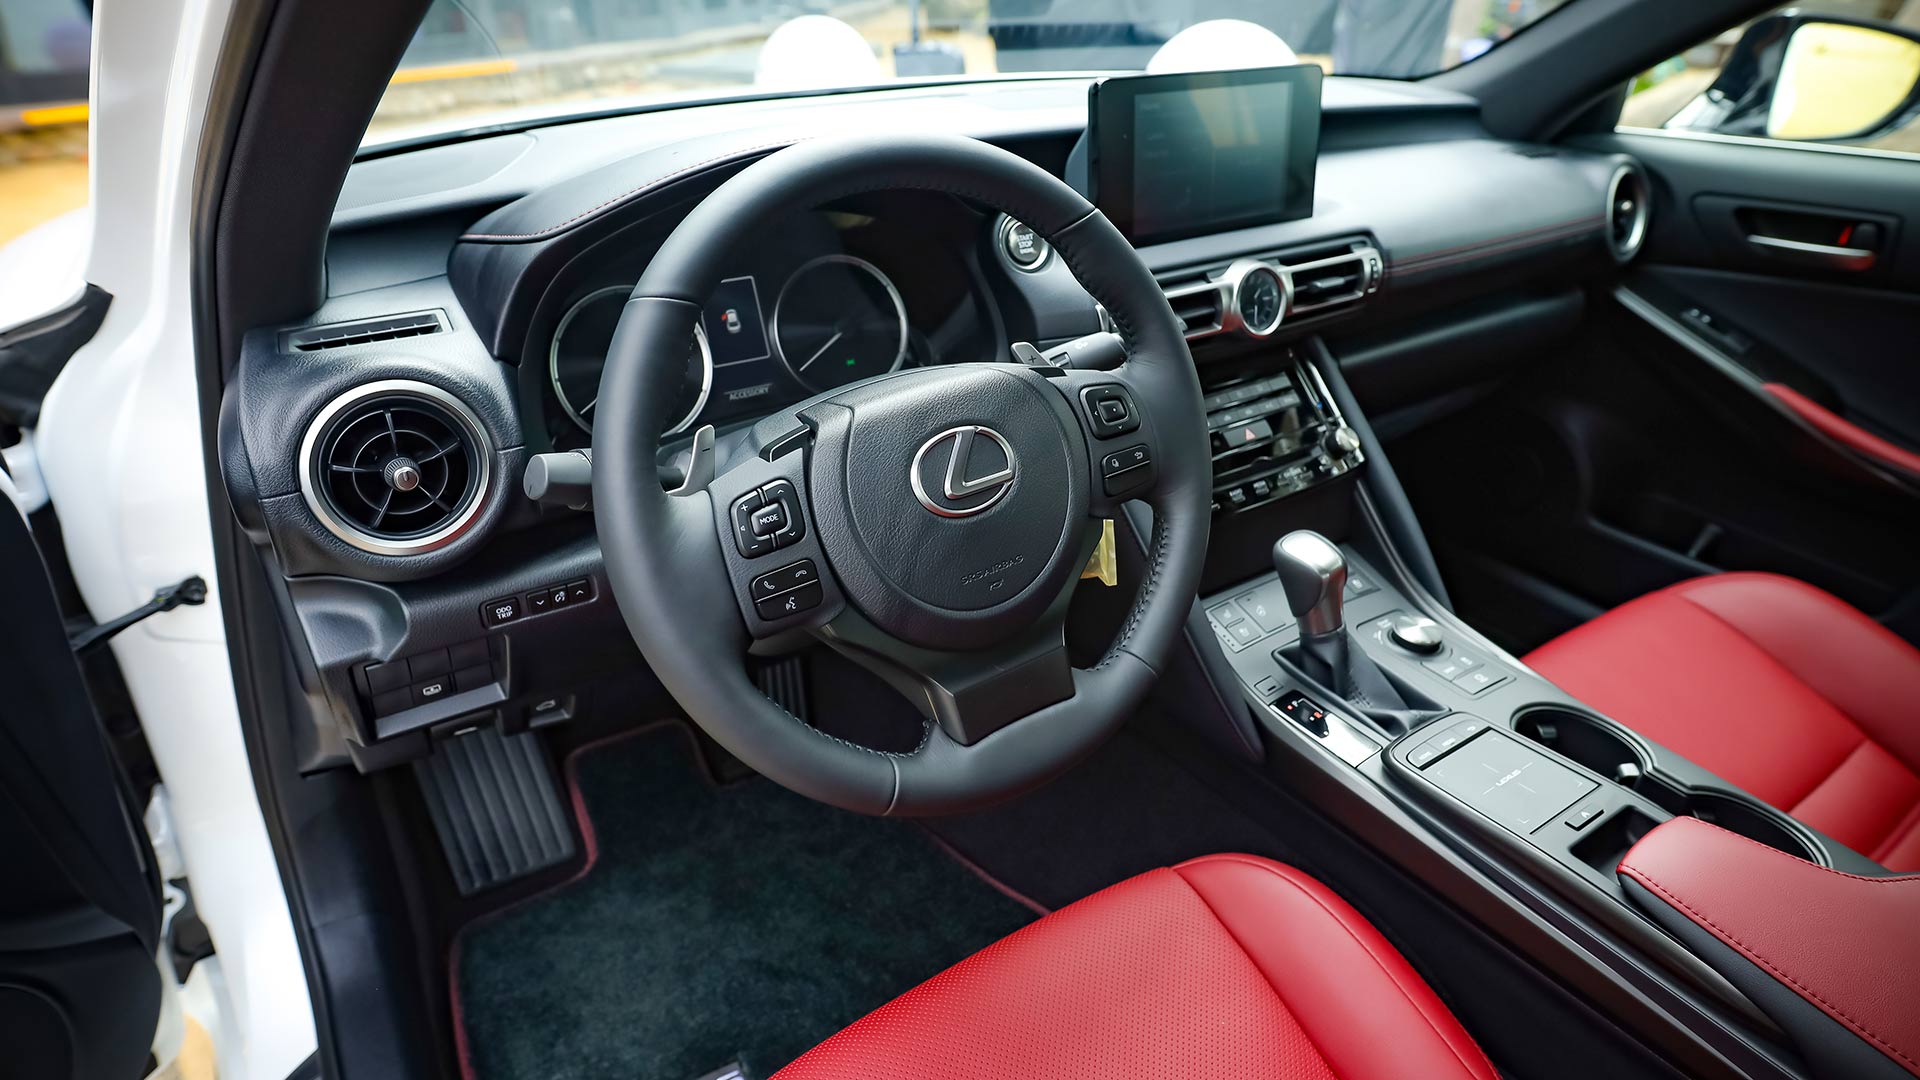 Tầm giá 2 tỷ nên chọn Mercedes-Benz C300 AMG hay Lexus IS300 Standard? - 5